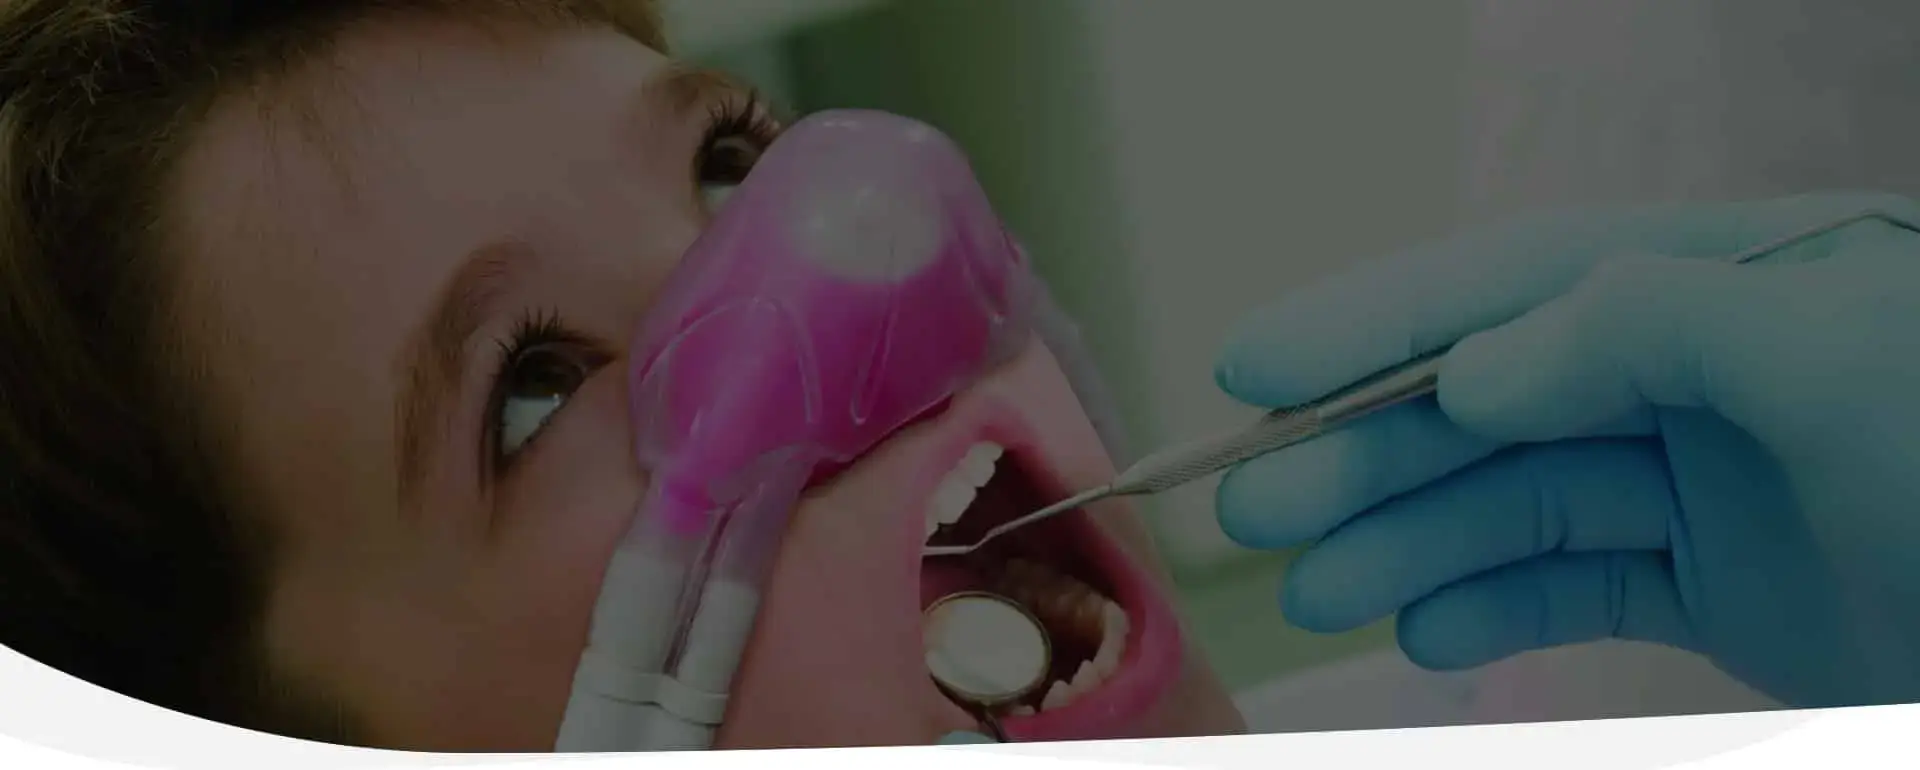 Dental Practice St Ives